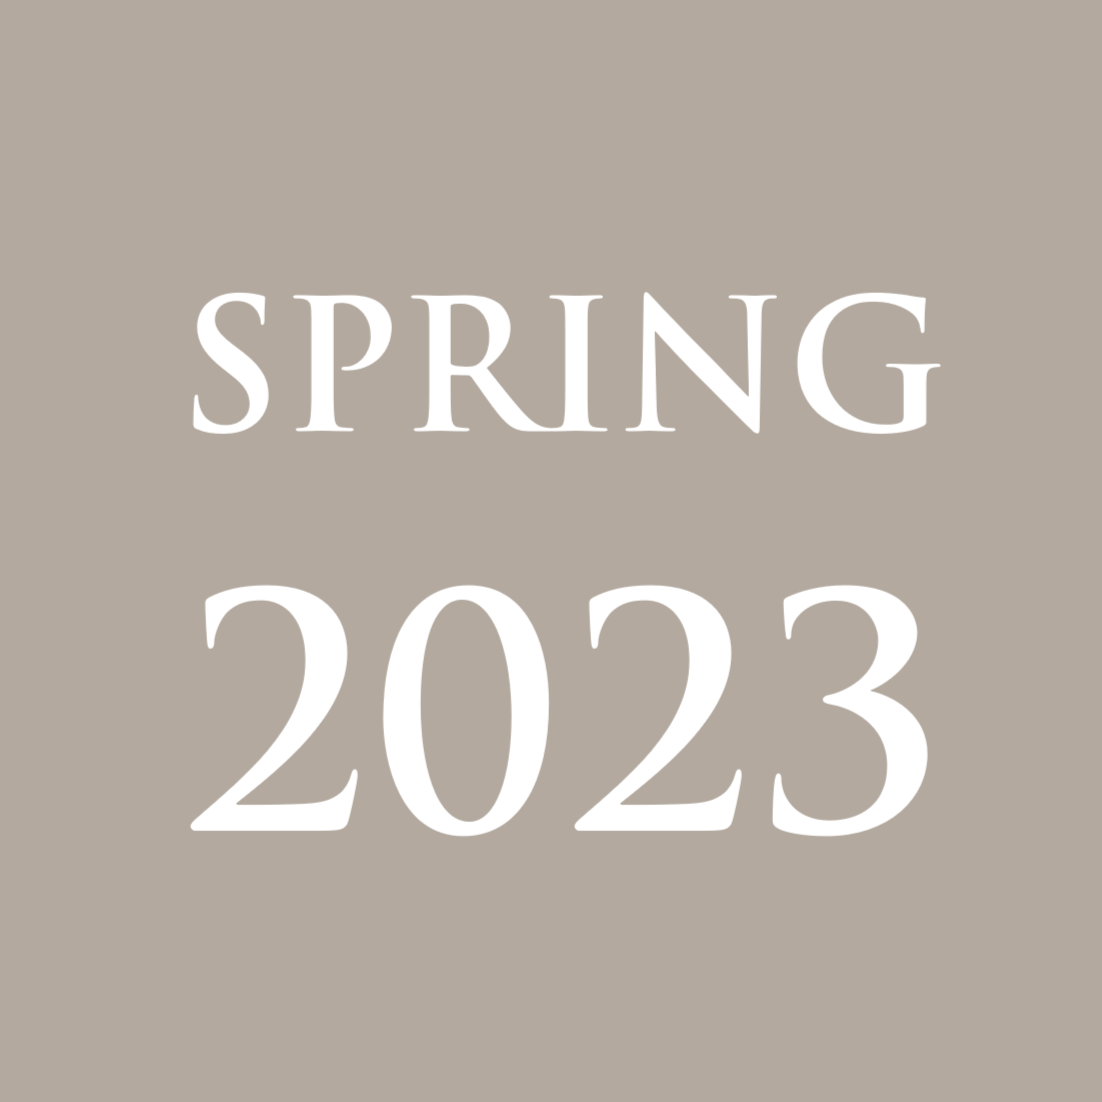 Spring 2023